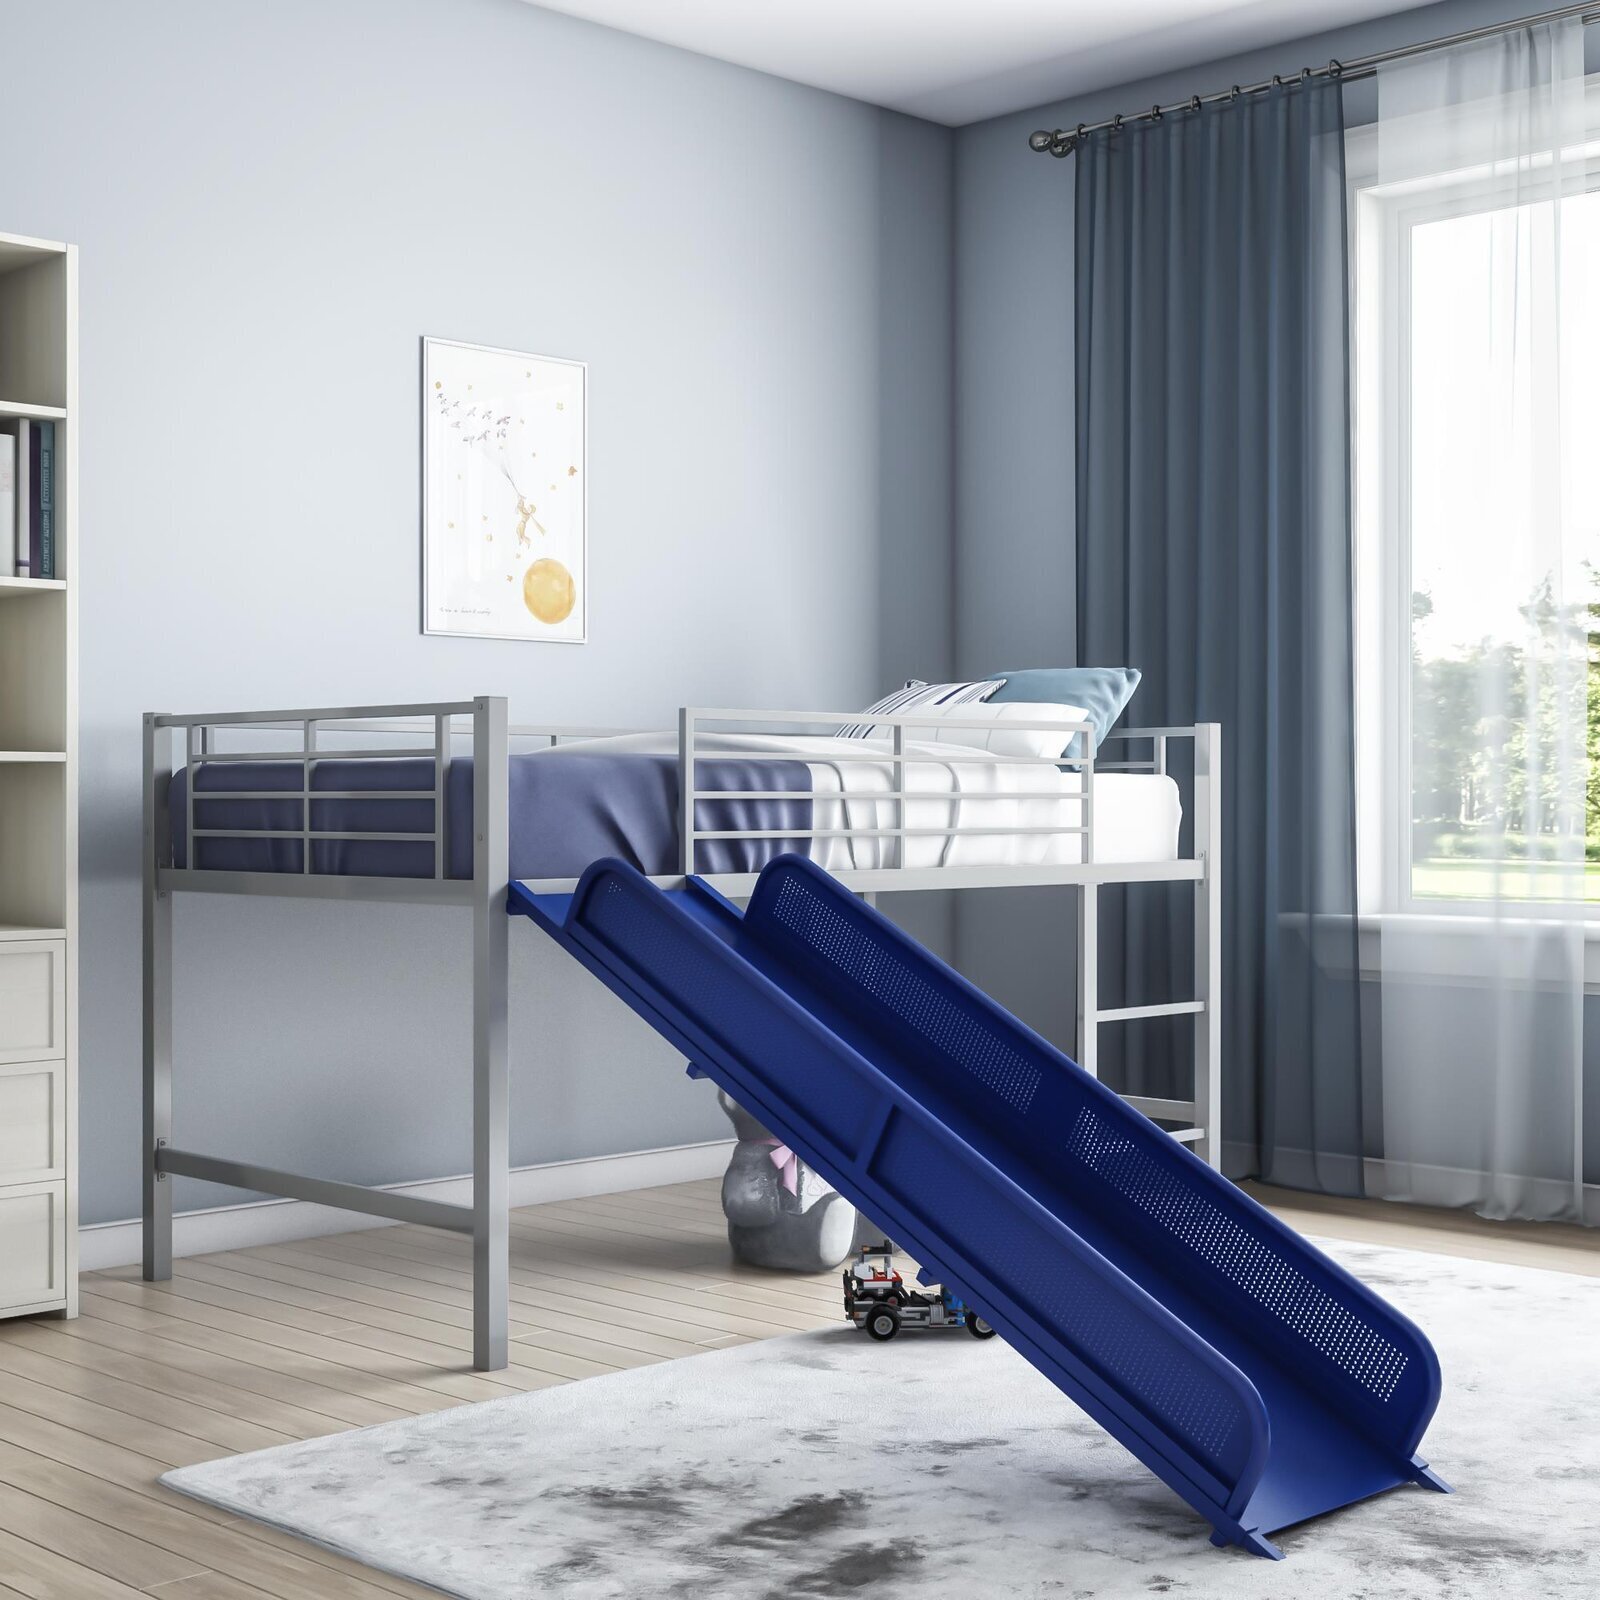 Metal loft bed with slide